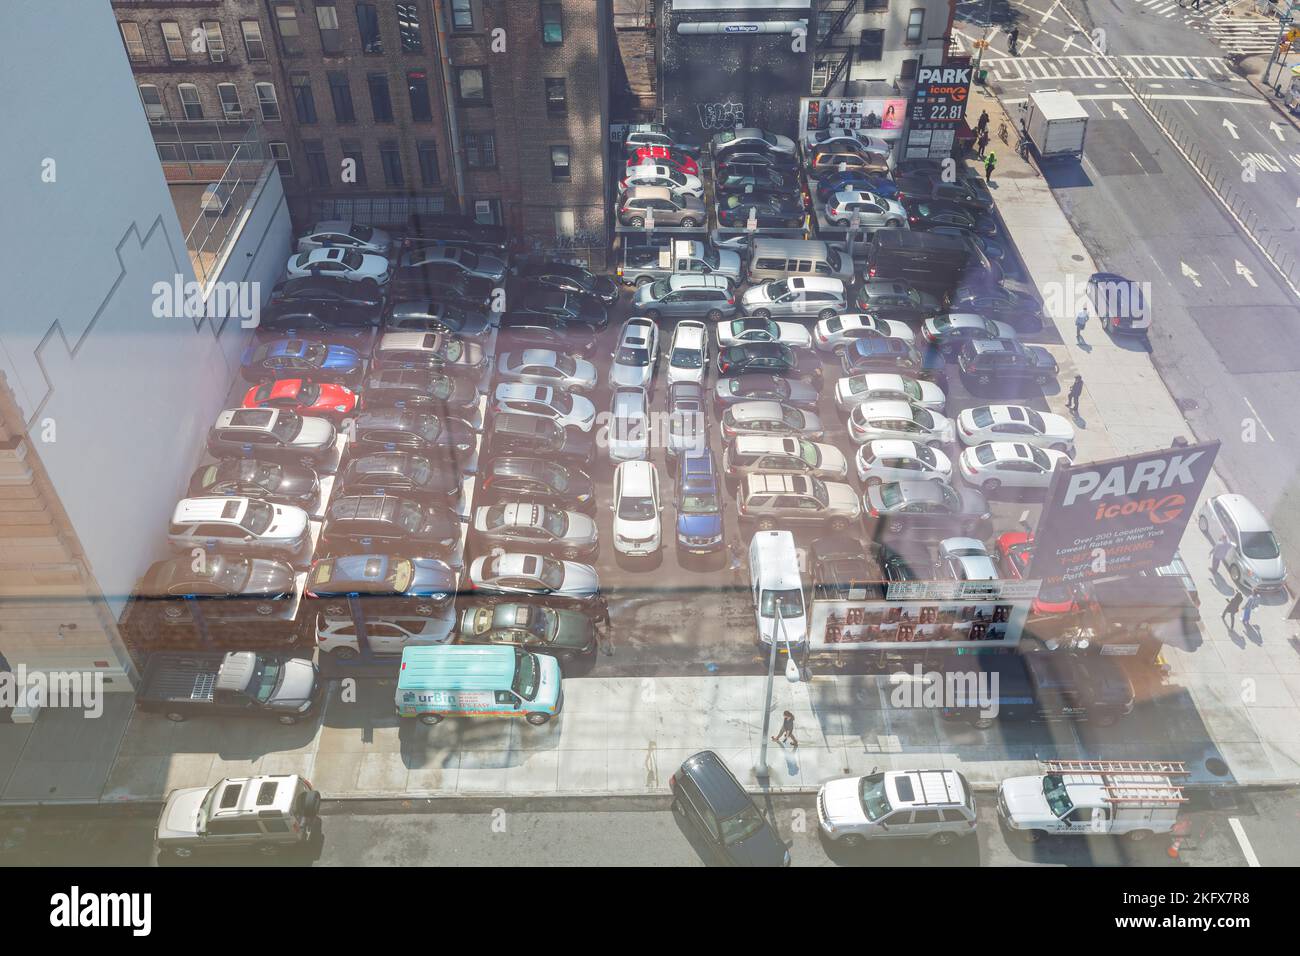 New York, SEP 16 2014 - Luftaufnahme eines belebten Parkplatzes Stockfoto